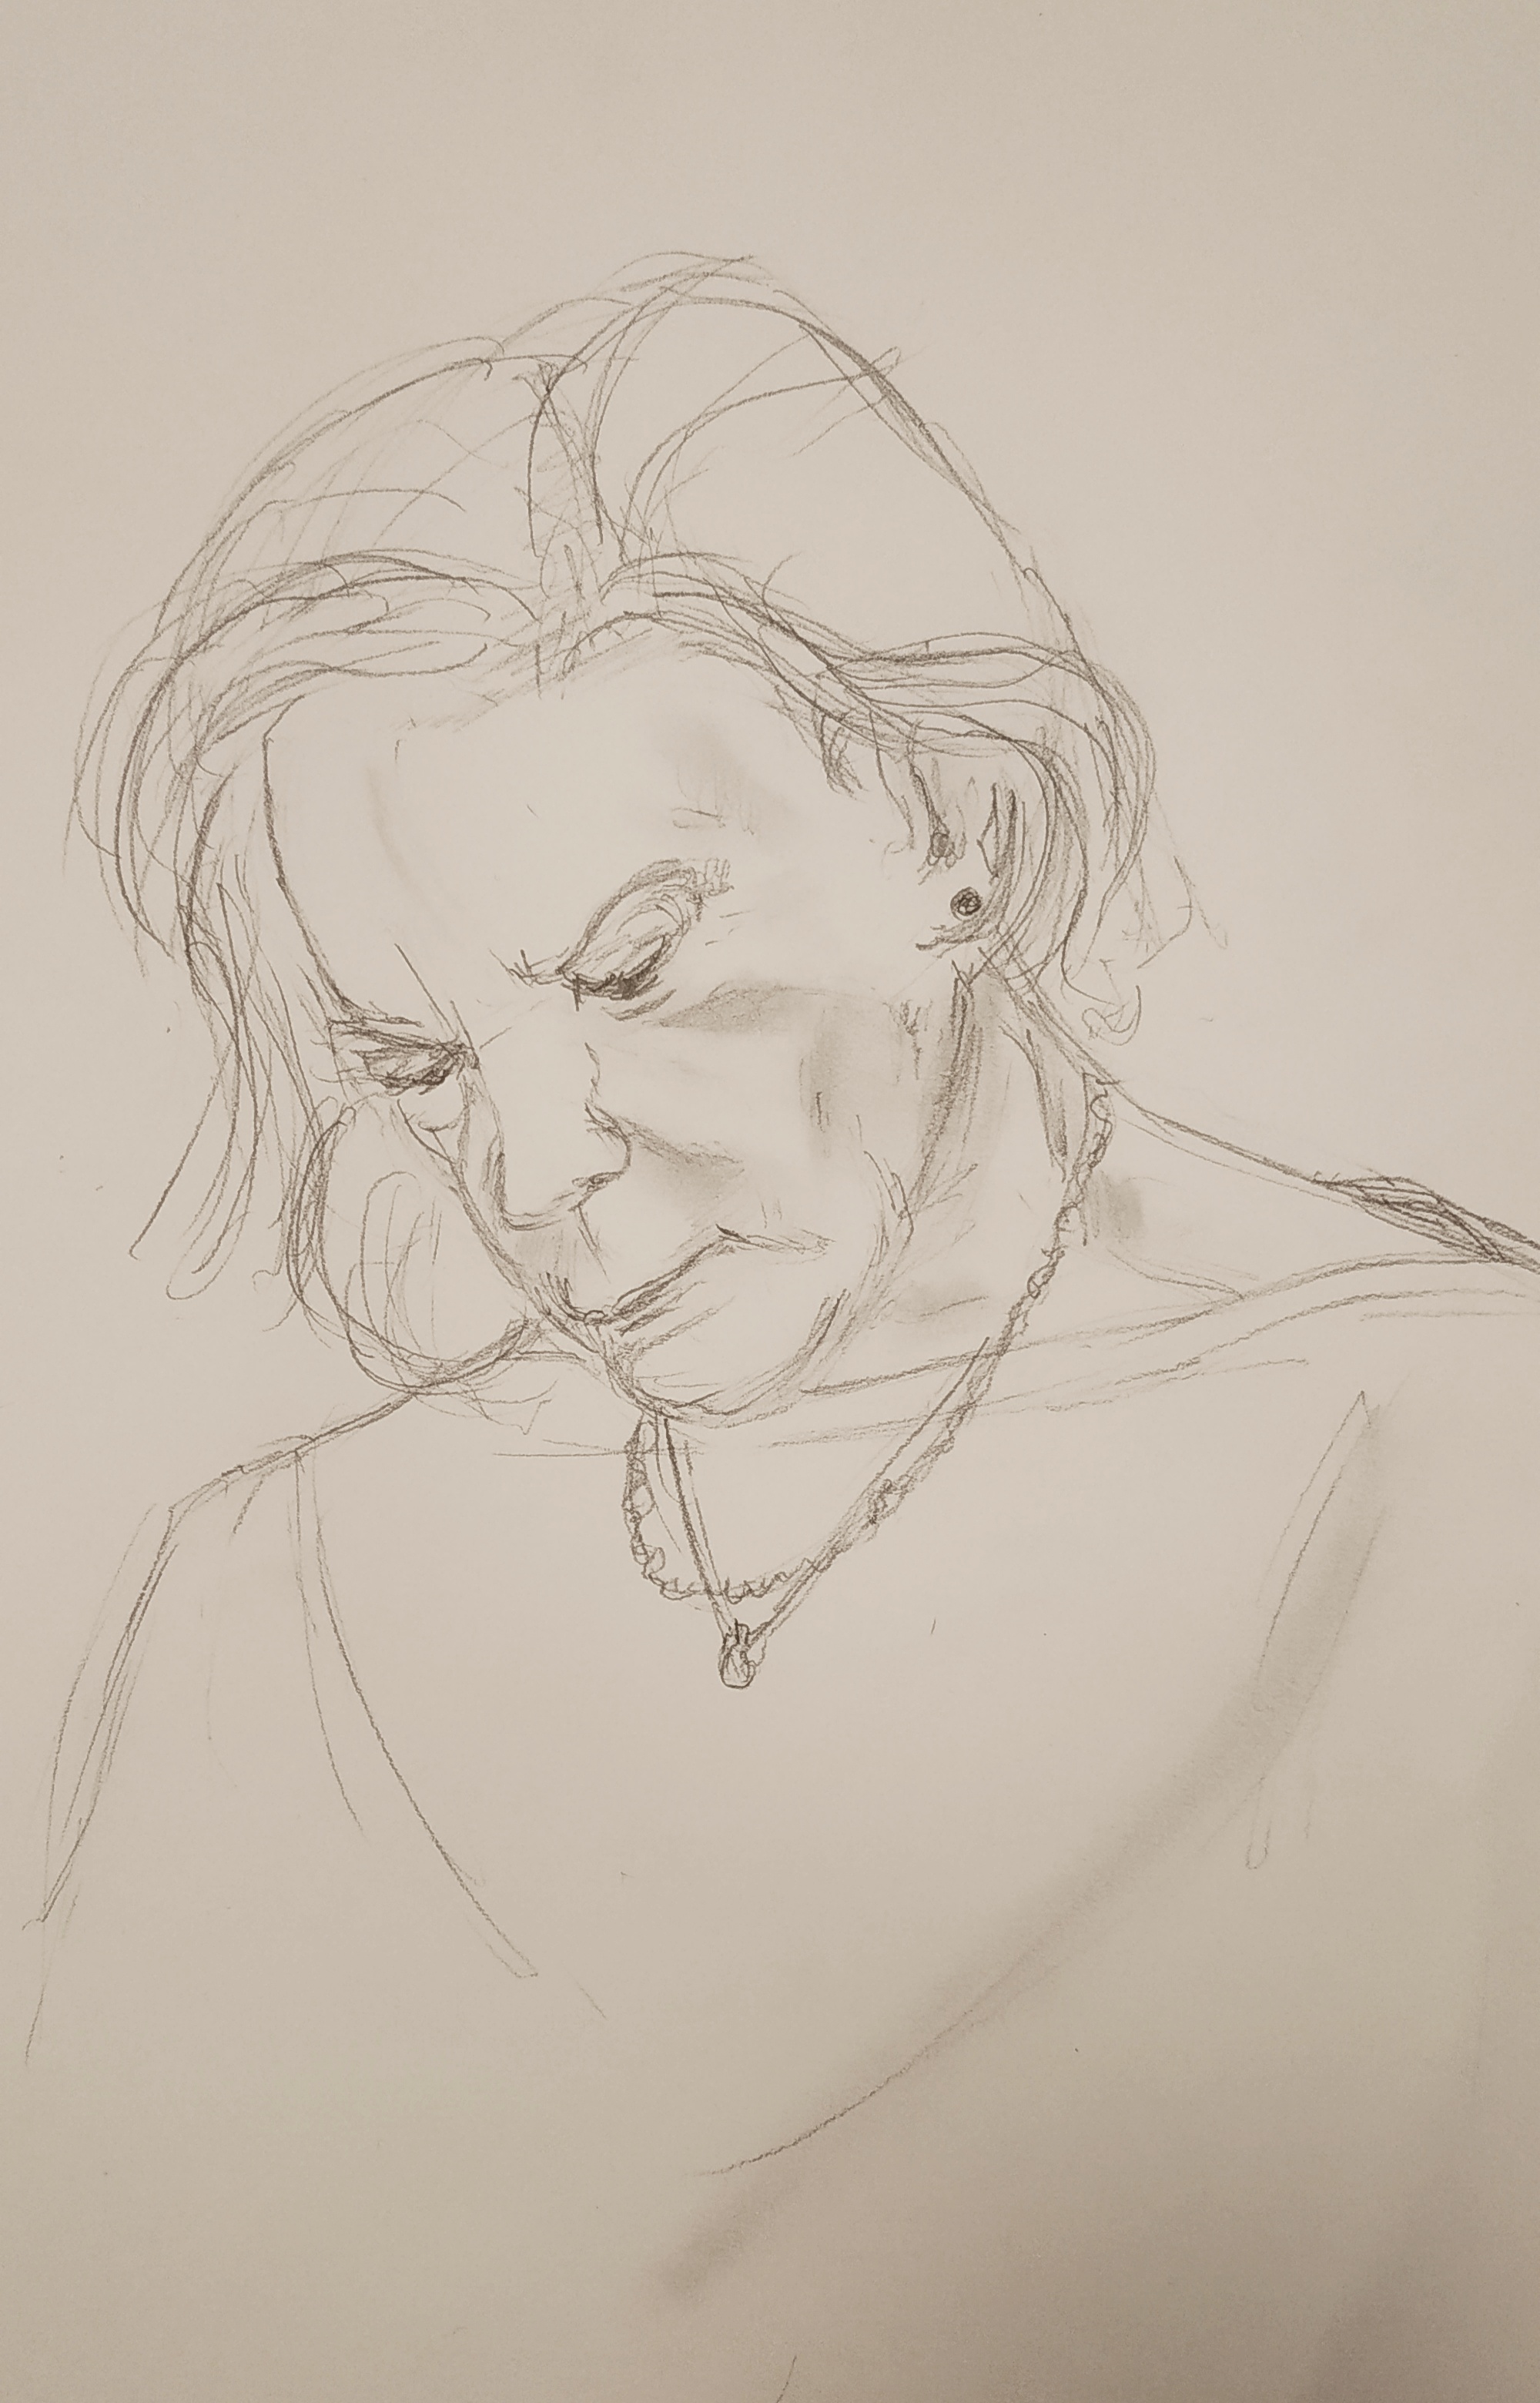  Portrait dessin crayon sur papier  cours de dessin 